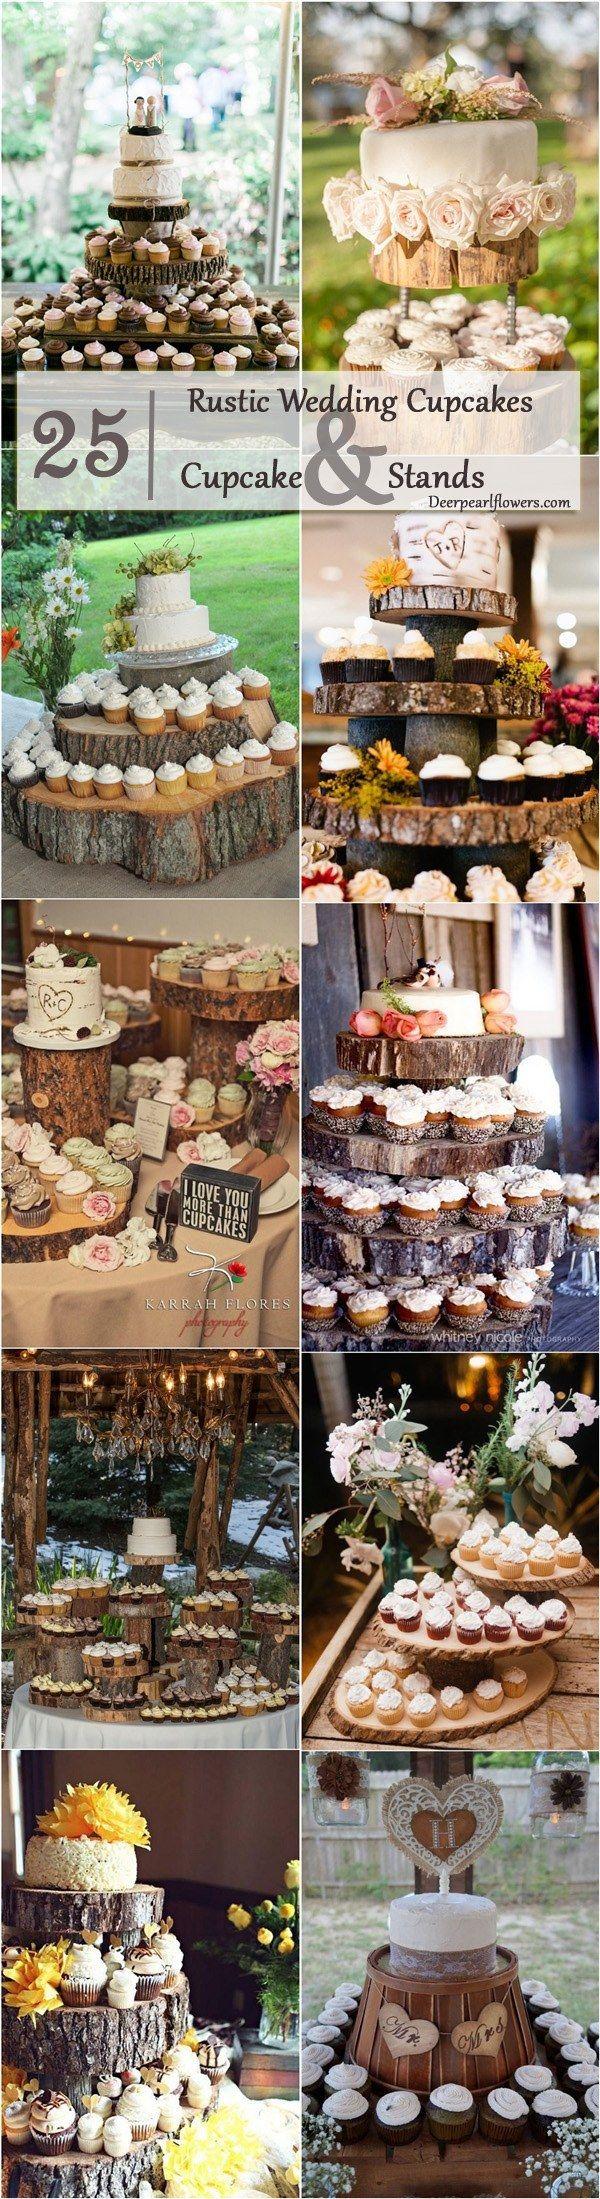 Свадьба - 25 Amazing Rustic Wedding Cupcakes & Stands